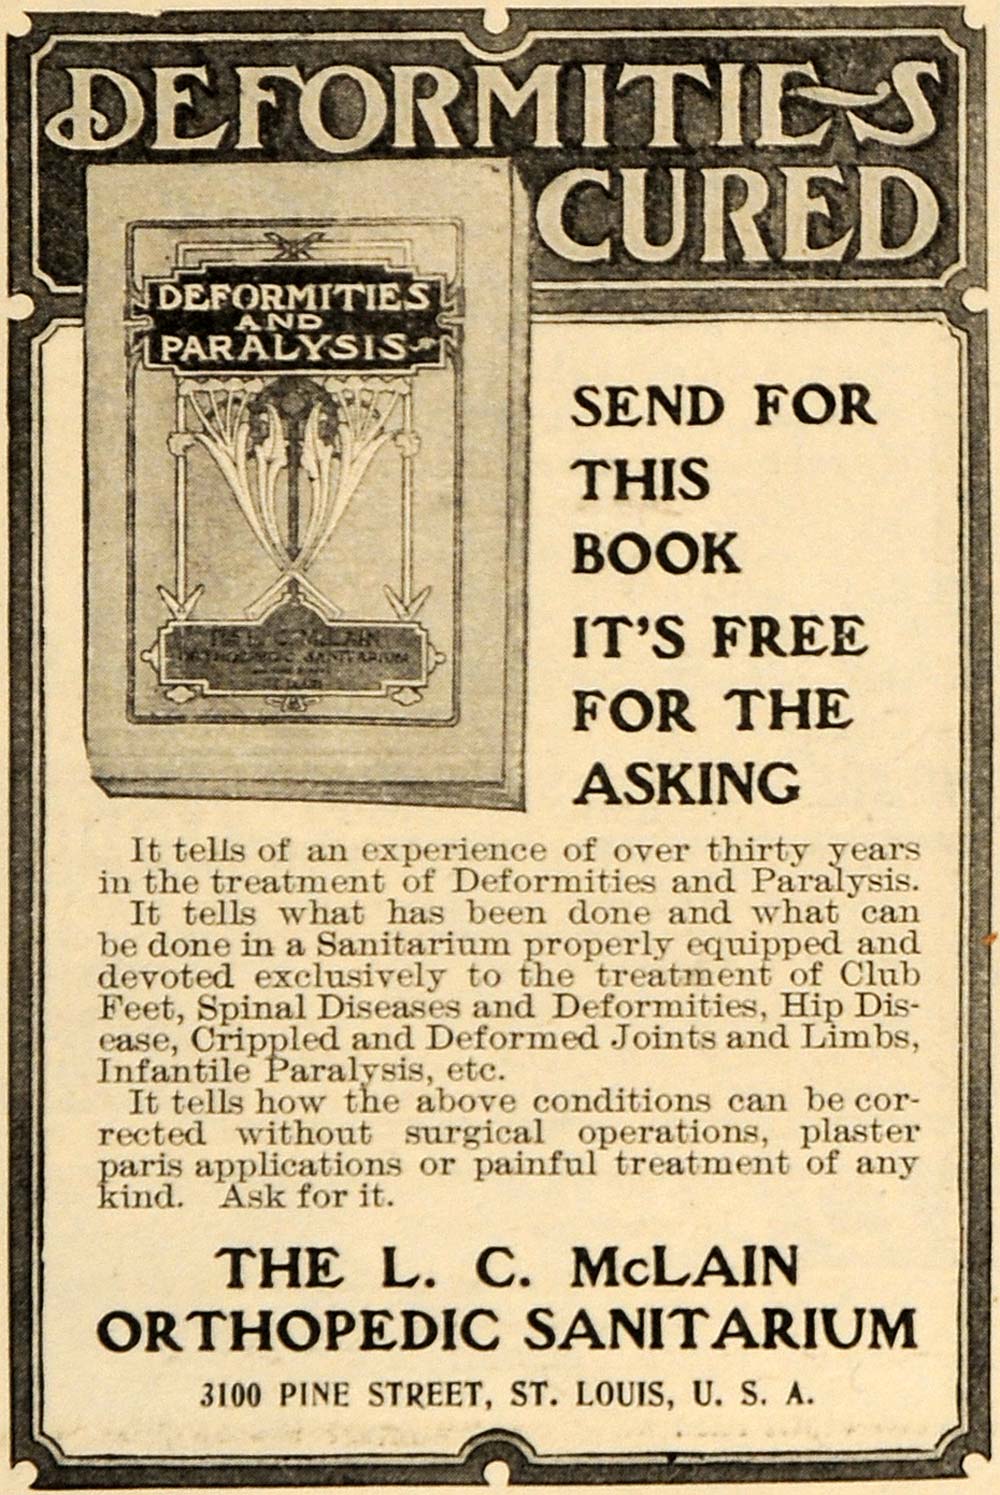 1906 Ad L C McLain Orthopedic Sanitarium Paralysis - ORIGINAL ADVERTISING ARG1